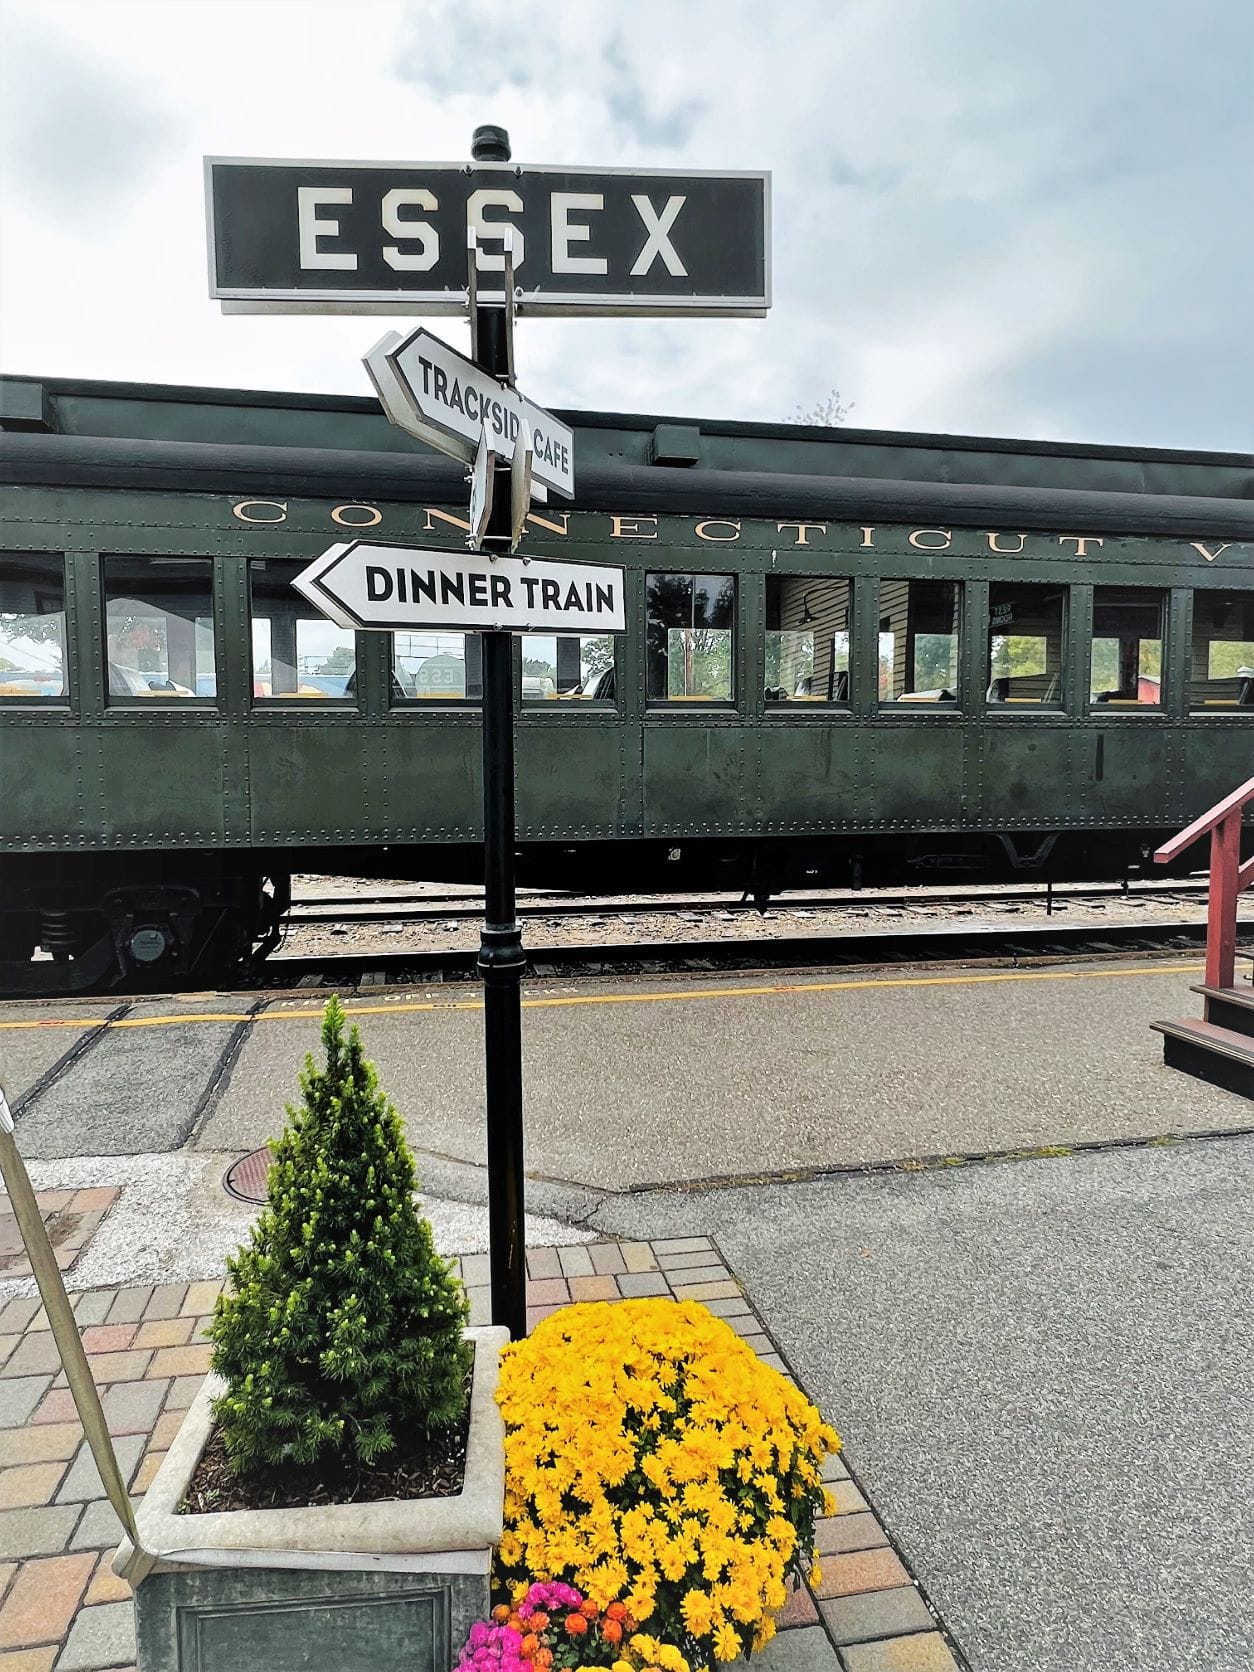 Essex Train Depot